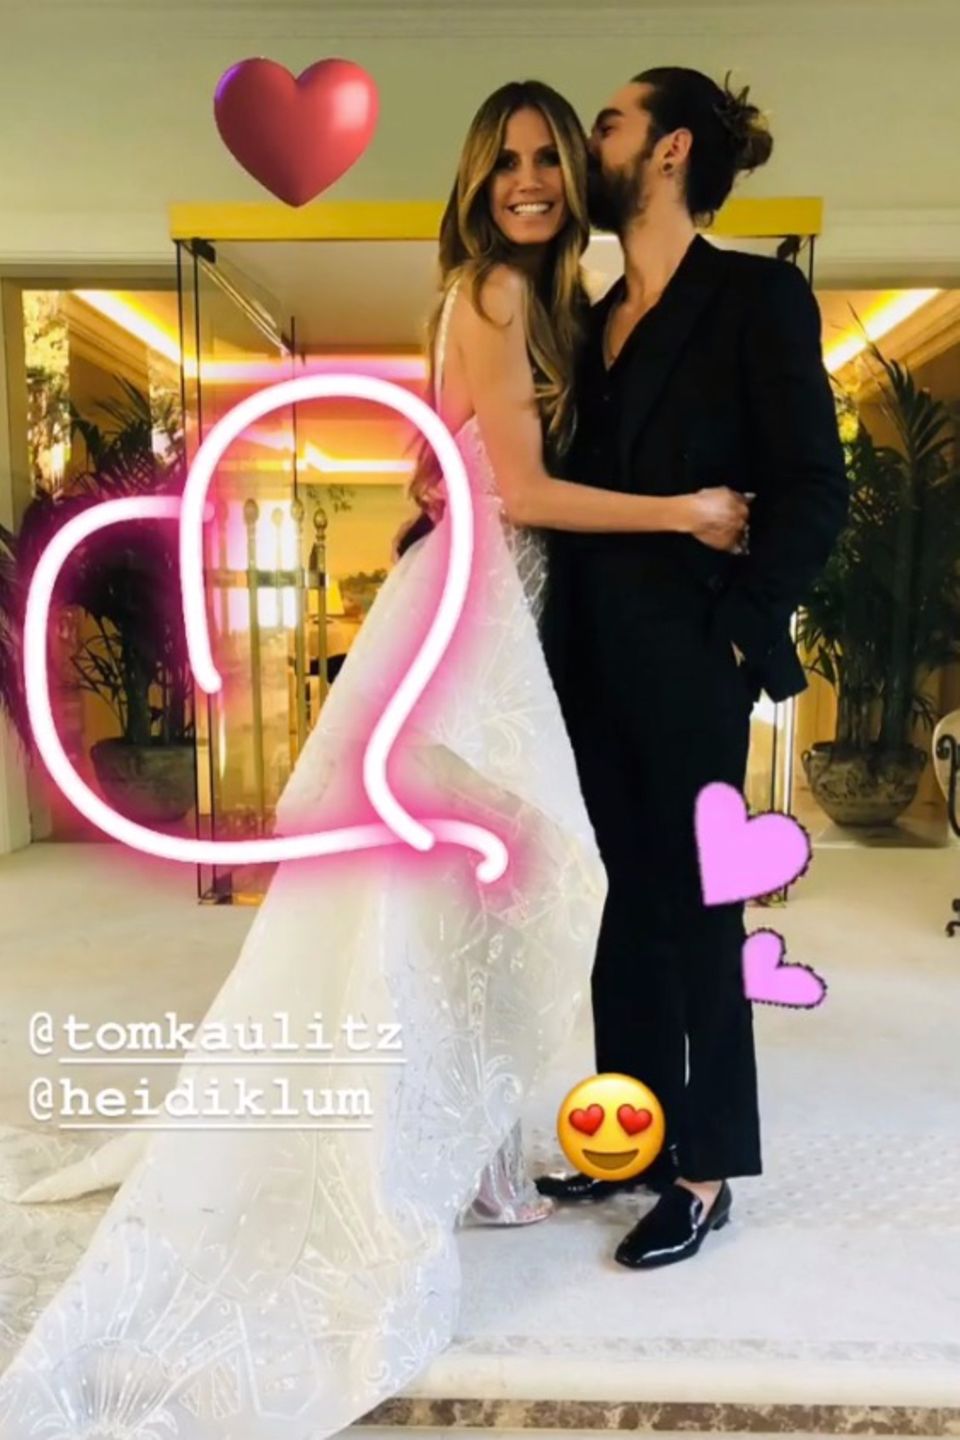 Bill Kaulitz hat das Foto von Heidi Klum und seinem Bruder Tom mit Herzen verziert. Ein klares Statement, dass der "Tokio Hotel"-Frontmann die Frau an Toms Seite akzeptiert hat. 